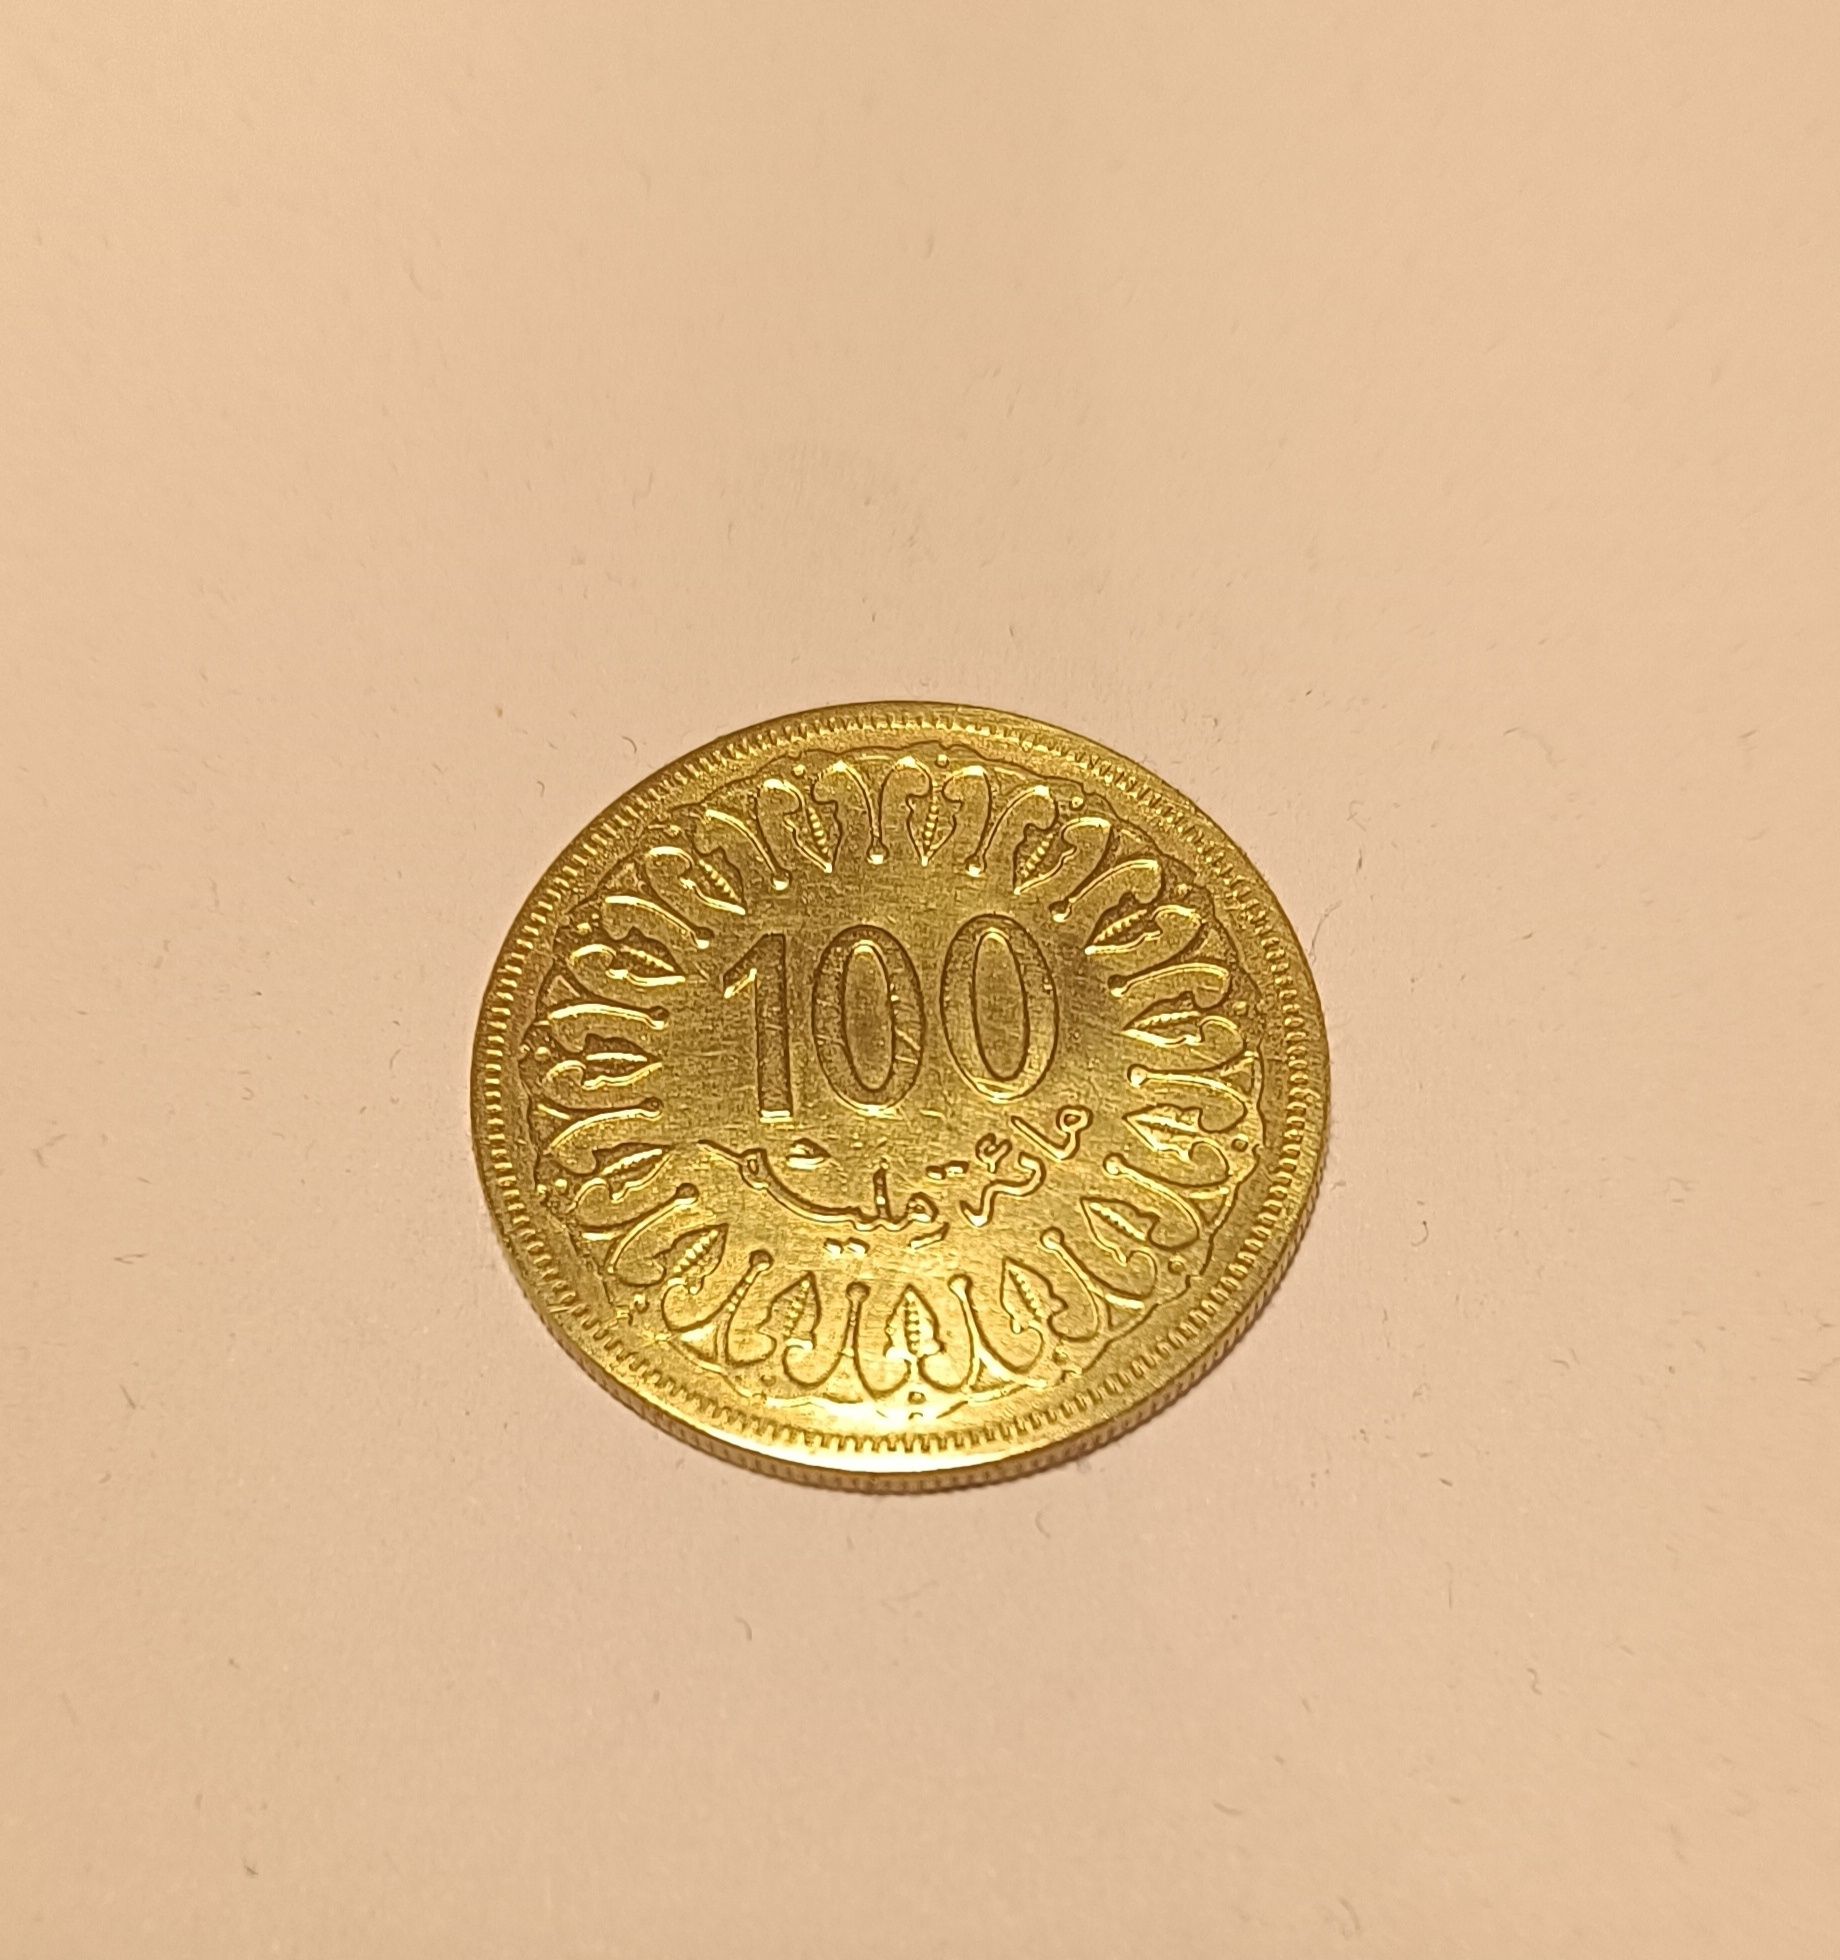 Tunezja 100 Milimów 1960 rok